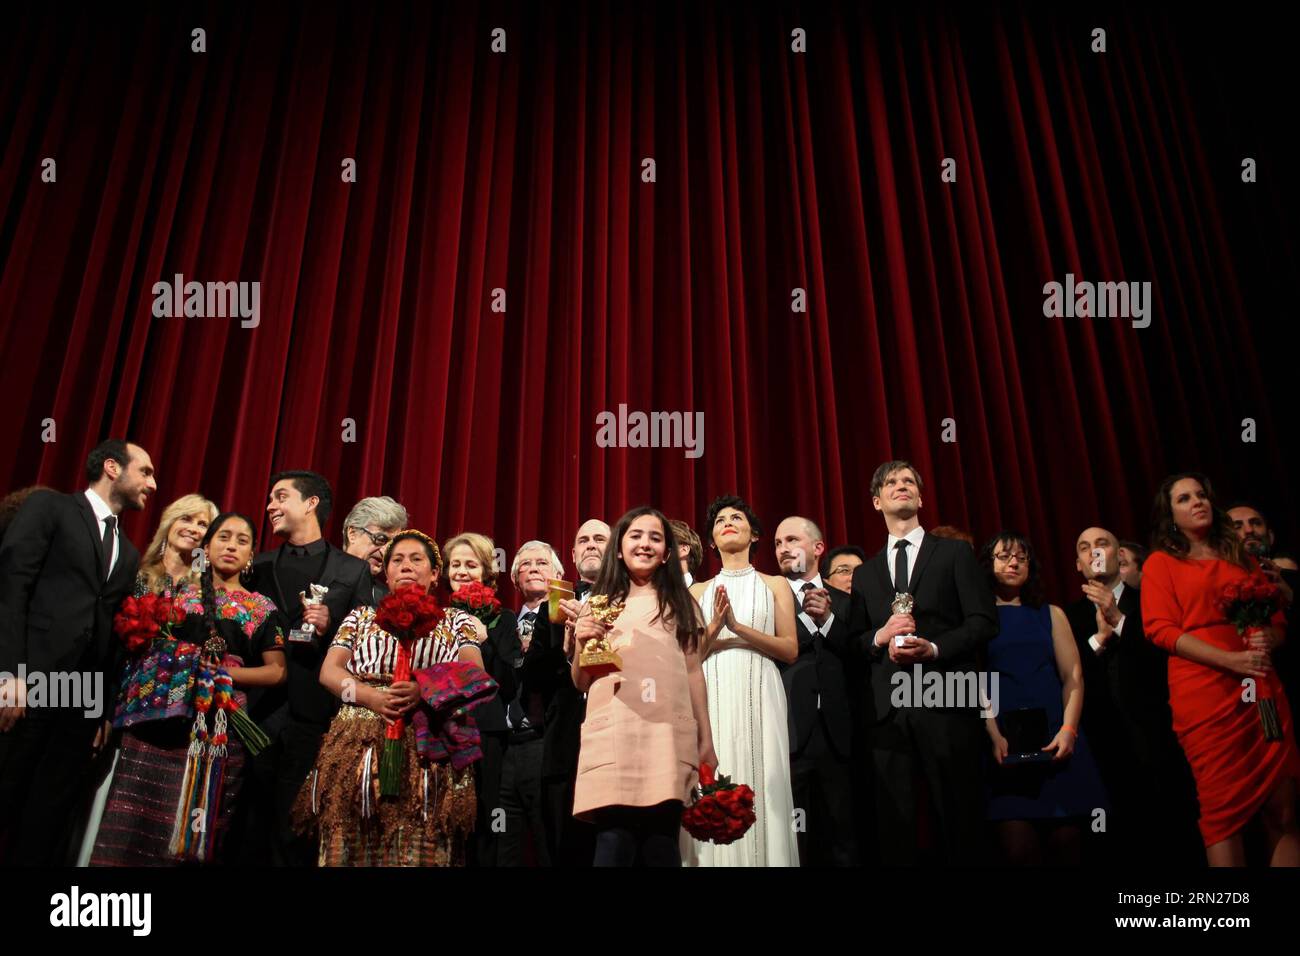 DIVERTISSEMENT TAPIS ROUGE 65. Berlinale - Preisverleihung (150214) - BERLIN, 14 février 2015 -- HANA Saeidi(C), nièce du réalisateur iranien Jafar Panahi, reçoit l'Ours d'or du meilleur film pour le film taxi de son oncle lors de la cérémonie de remise des prix au 65e Festival international du film de la Berlinale à Berlin, Allemagne, le 14 février 2015. ALLEMAGNE-BERLIN-INTERNATIONAL FILM FESTIVAL-JAFAR PANAHI ZhangxFan PUBLICATIONxNOTxINxCHN Entertainment Red Carpet 65 Berlinale Award cérémonie Berlin février 14 2015 Hana C nièce de l'Iran la réalisatrice Jafar Panahi reçoit l'Ours d'or du meilleur film pour son oncle S film T. Banque D'Images